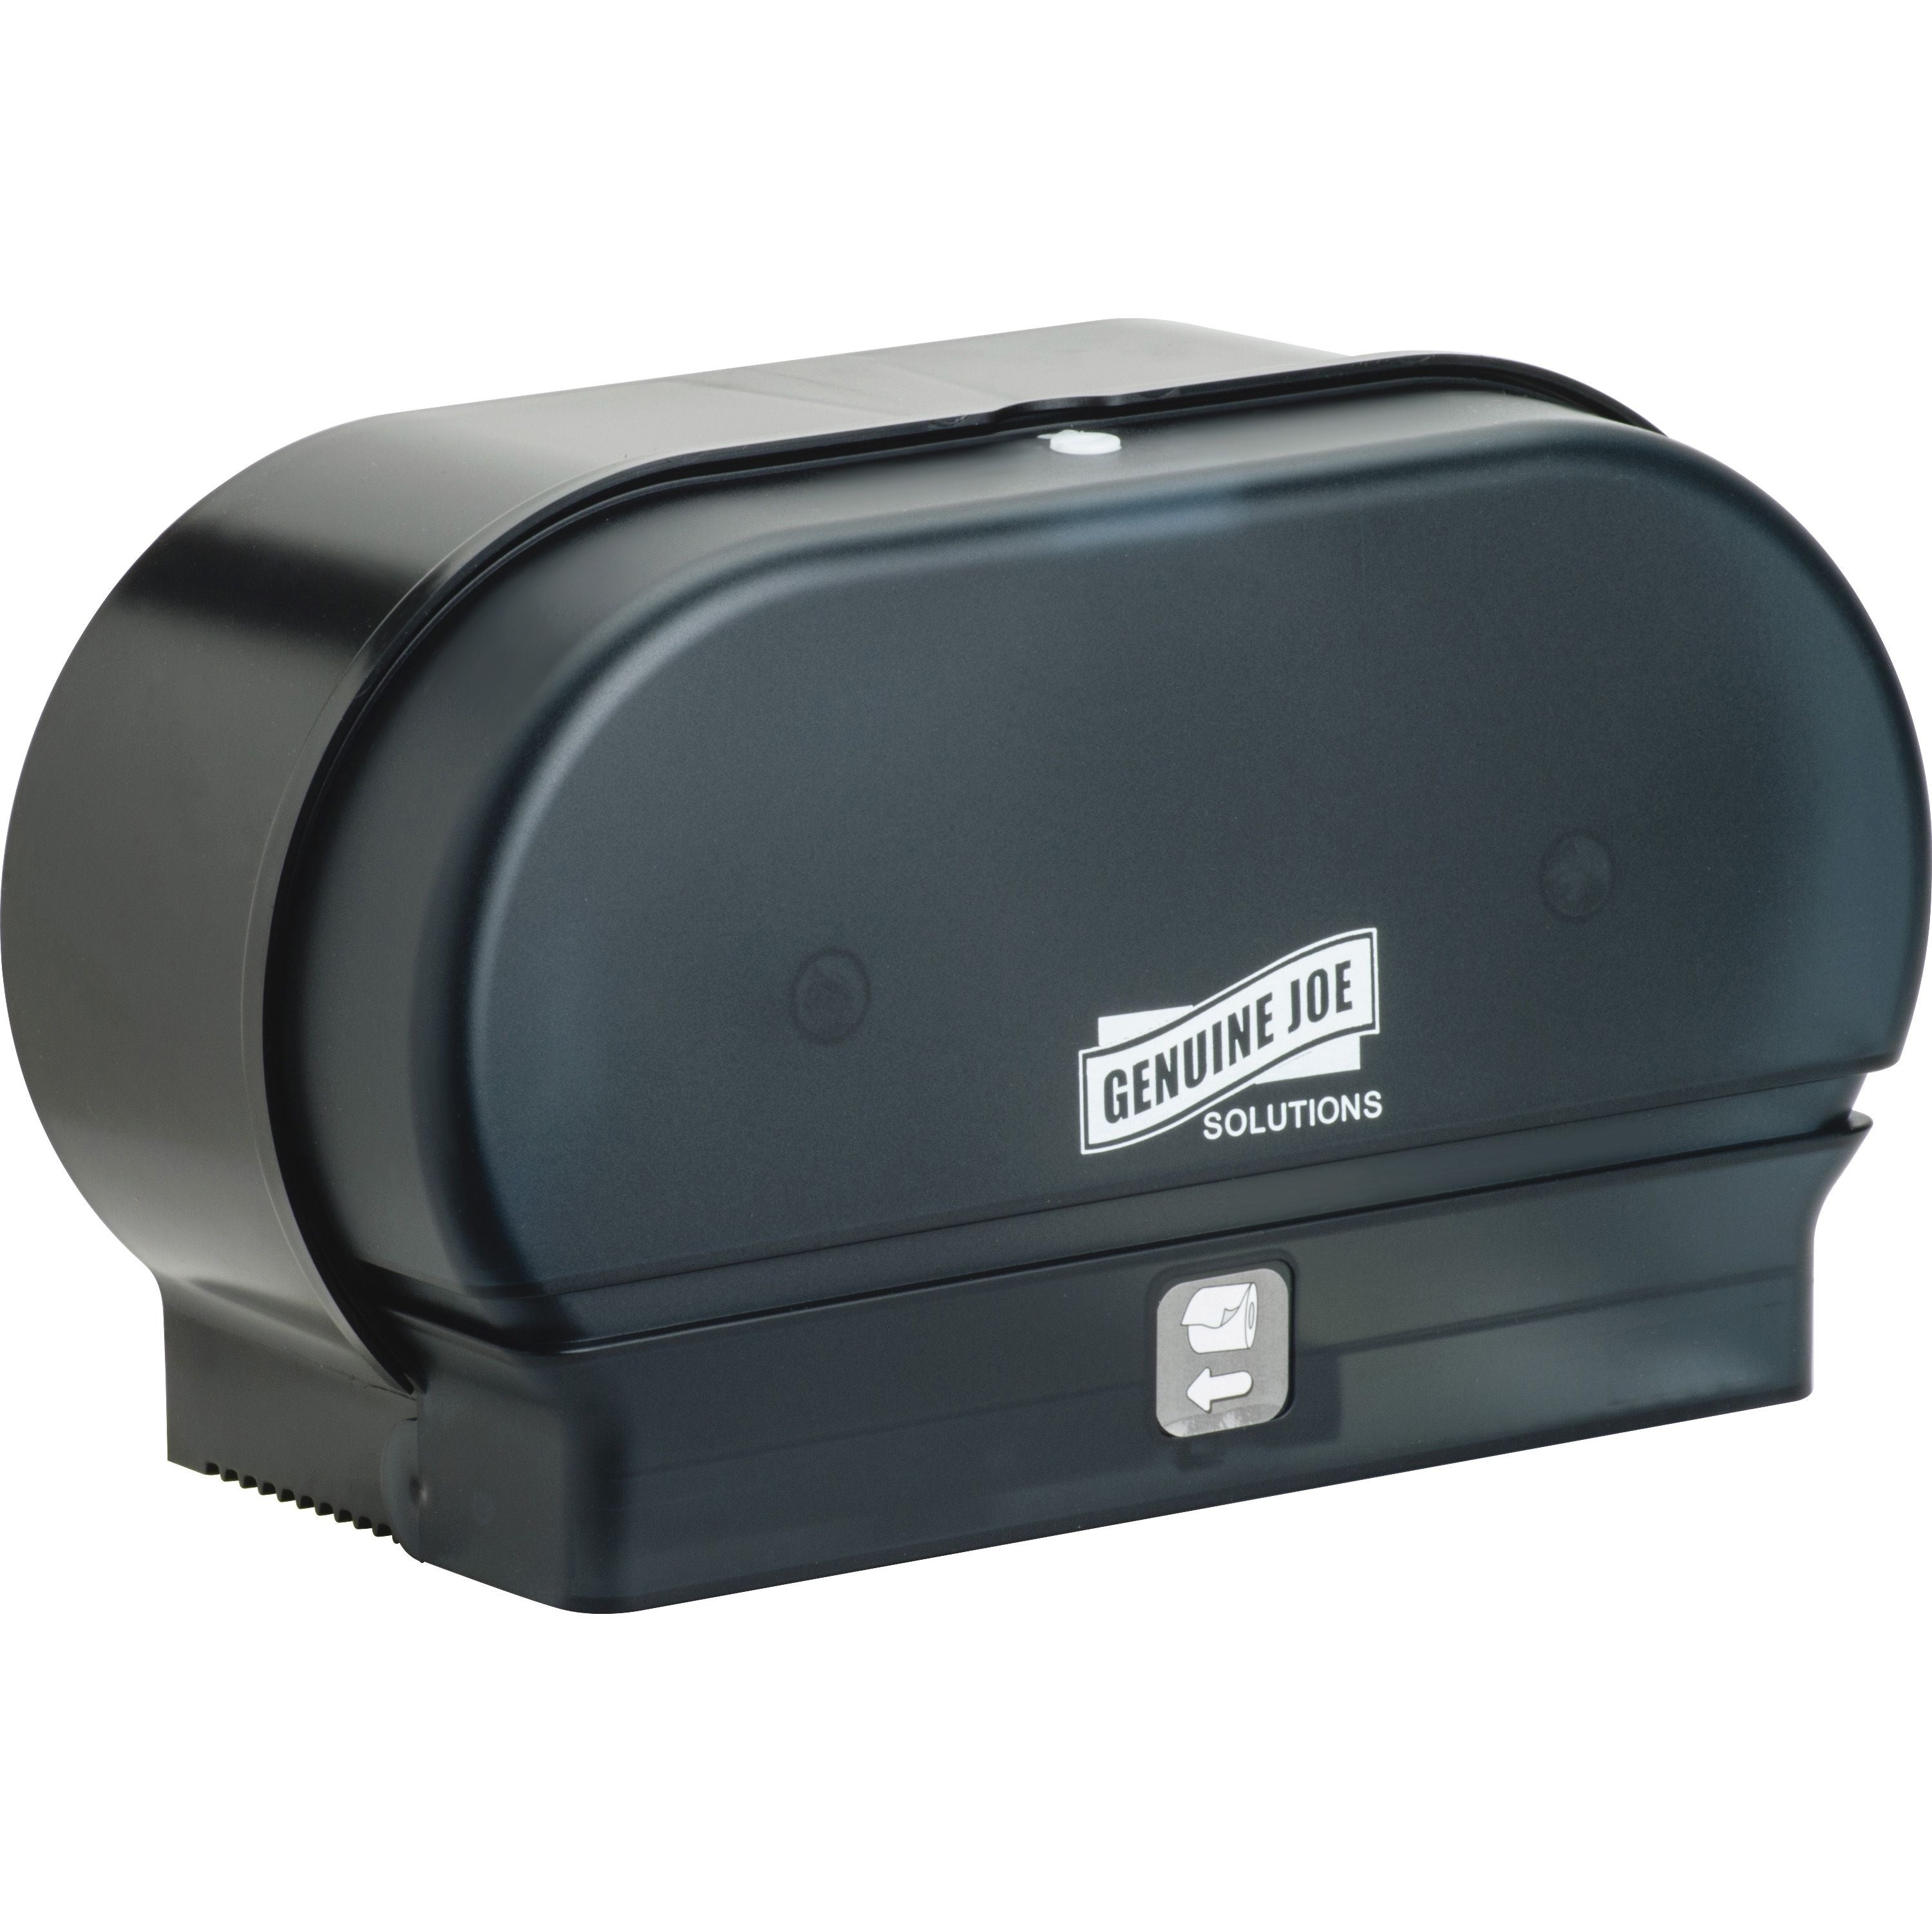 Genuine Joe Solutions Standard Bath Tissue Roll Dispenser - Manual - Roll - 2000 x Sheet, 2 x Roll - Black - Sliding Door - 6 / Carton - 3